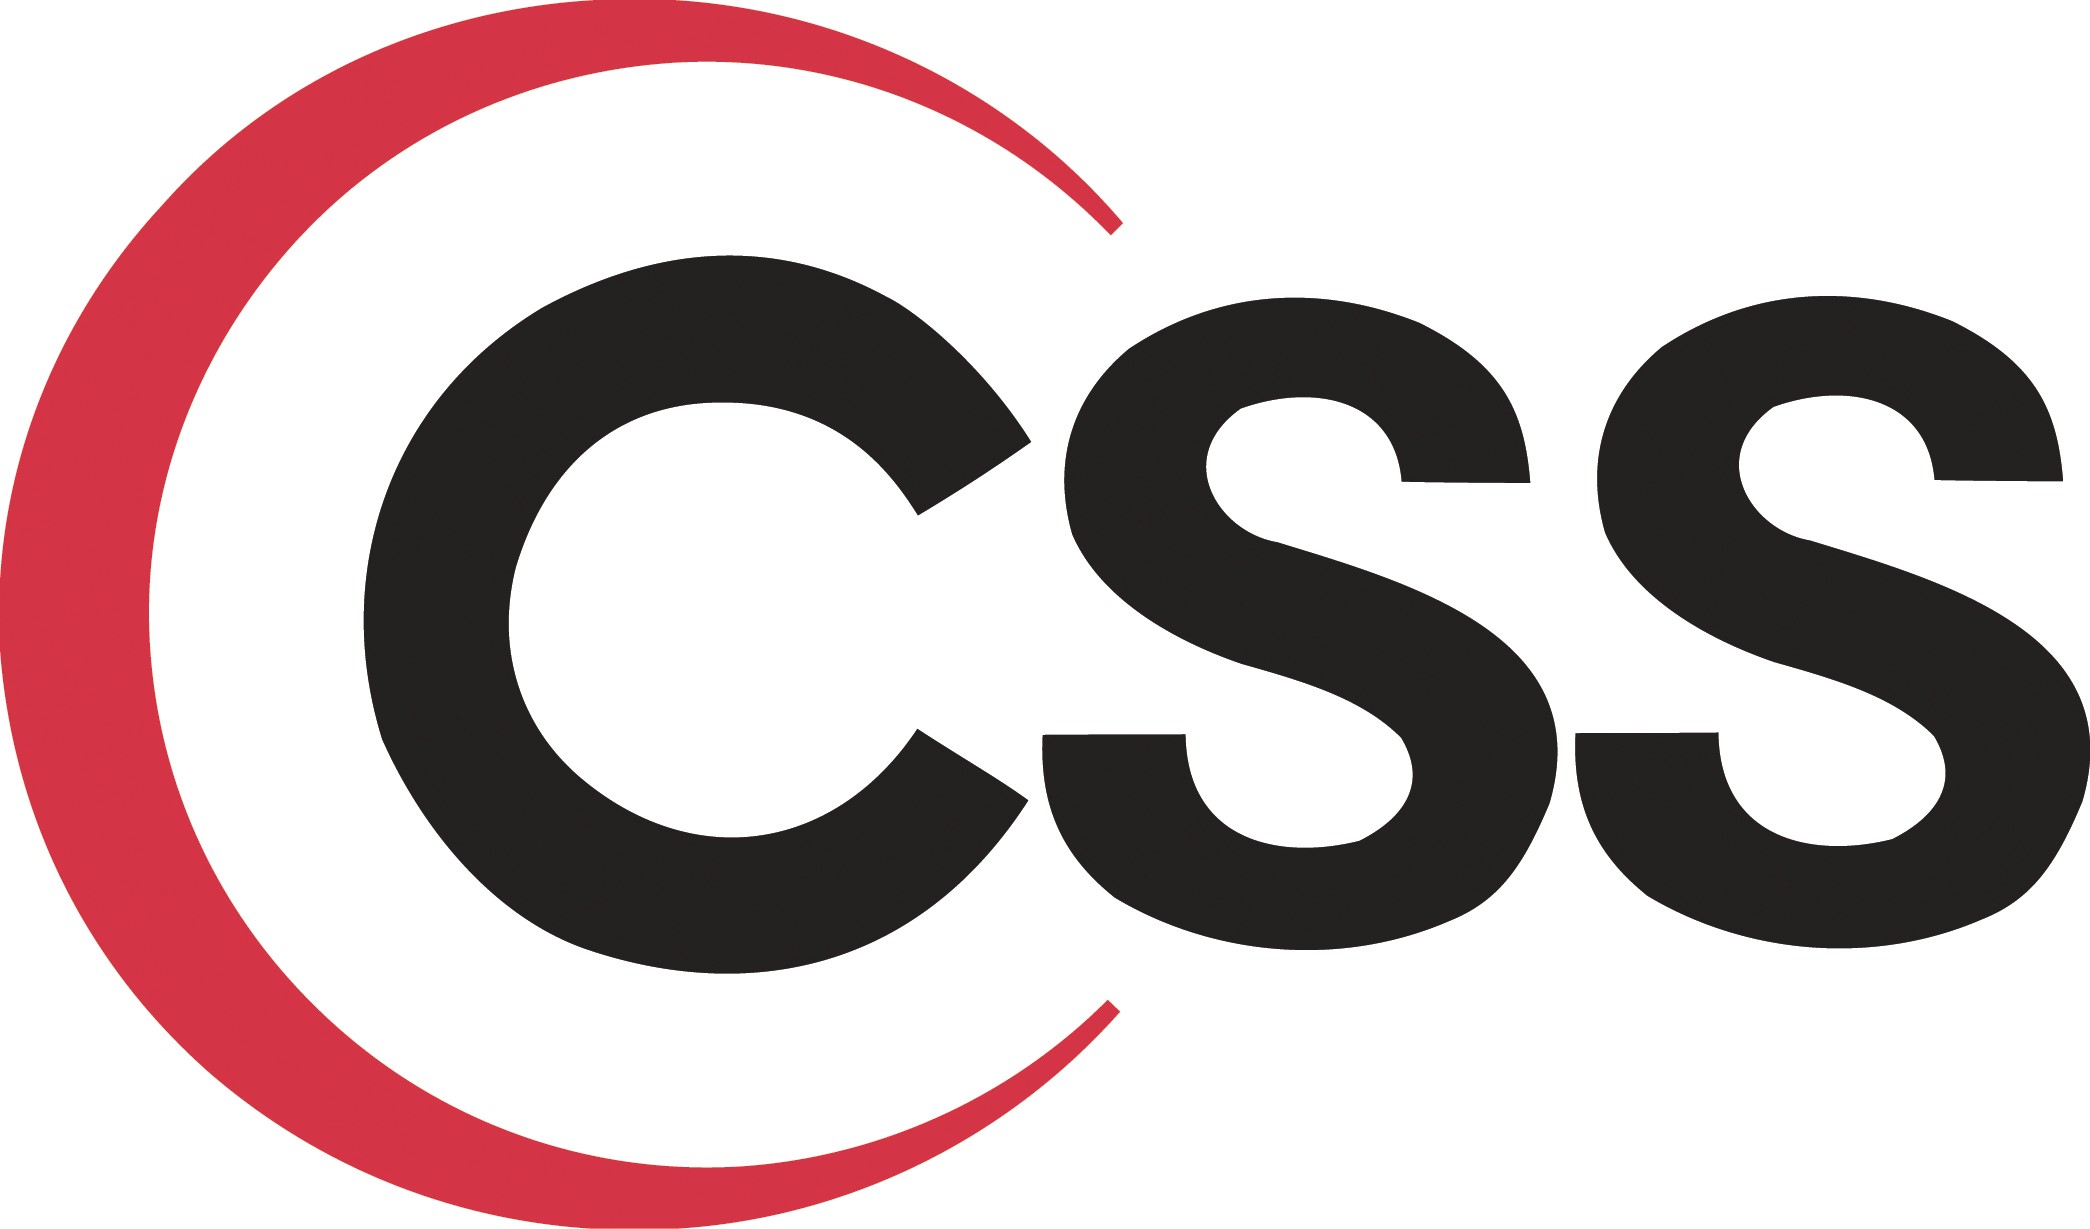 استفاده از کلاس های کمکی در css برای تکرارنکردن دستورات و کم کردن حجم css 